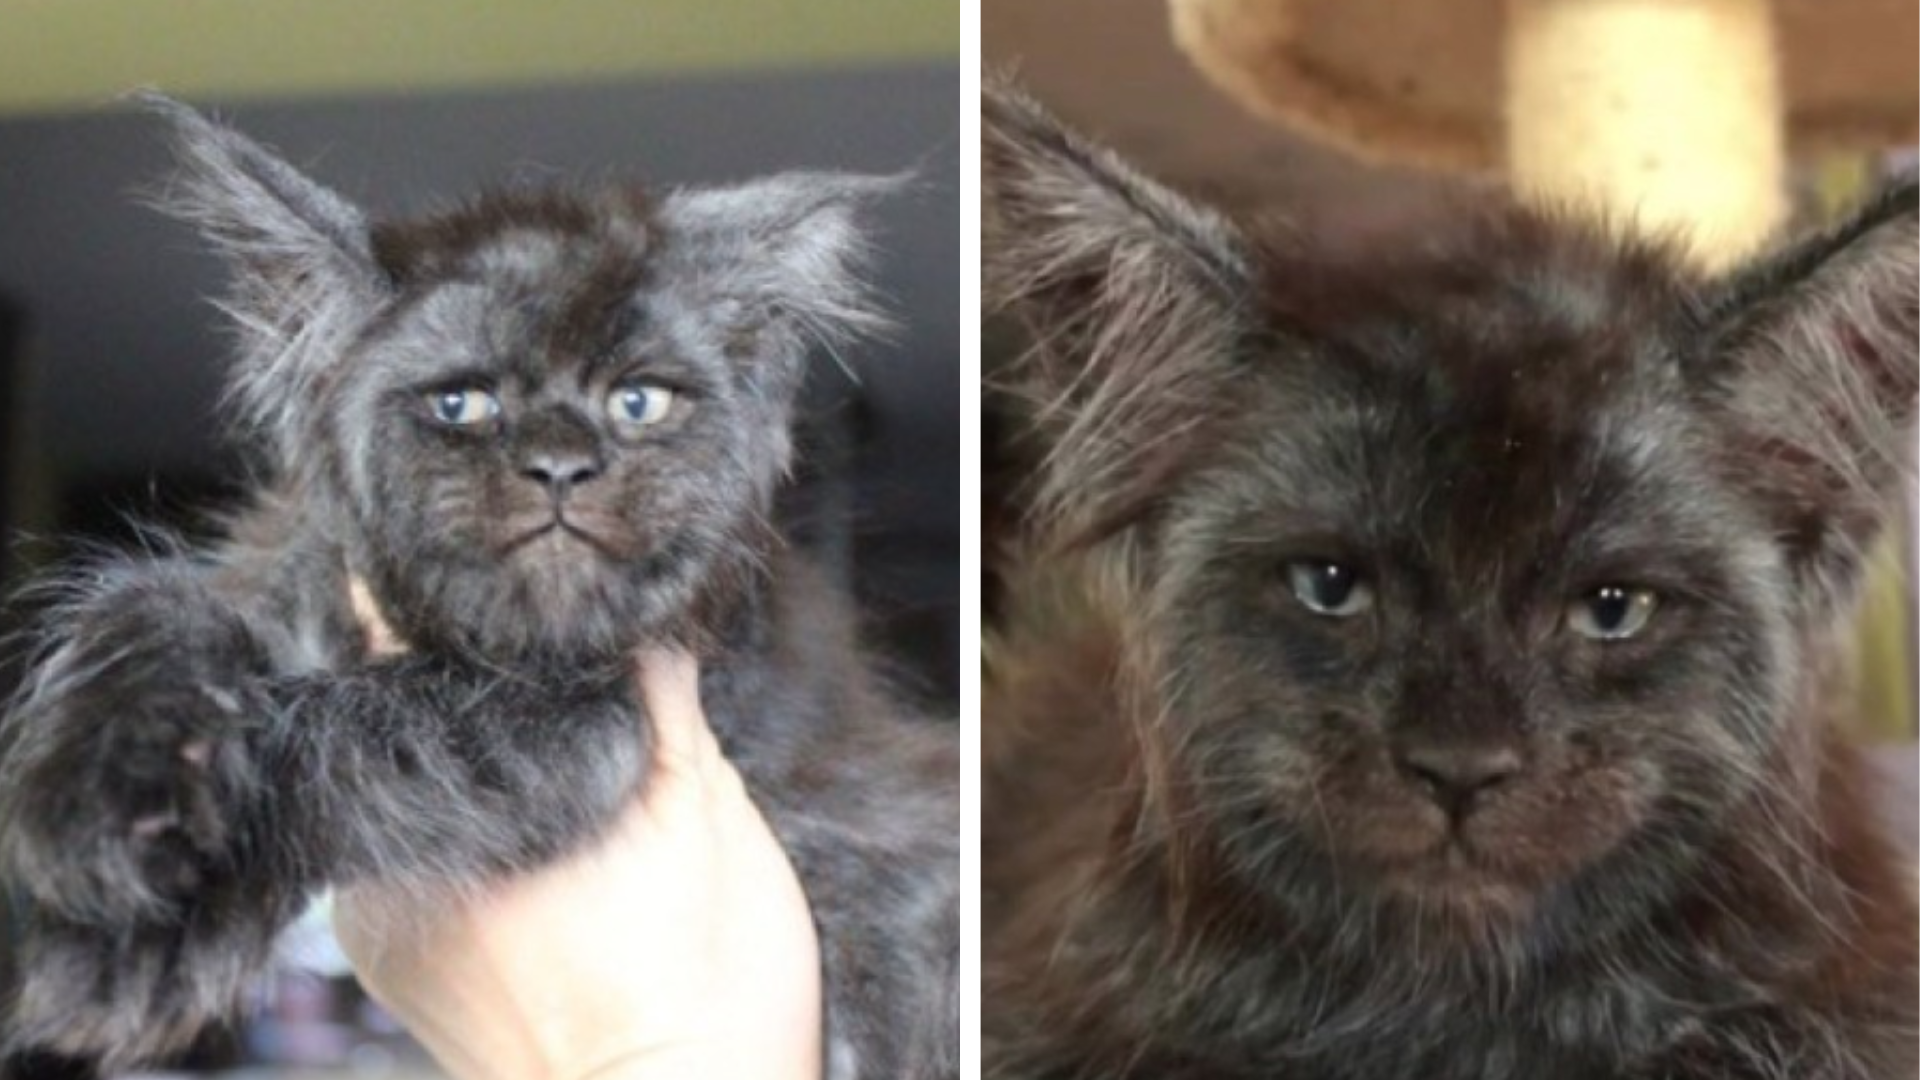 Instagram valcuje mačka, ktorá má ľudskú tvár. Páči sa vám jej netypický  vzhľad? | Obkec.sk